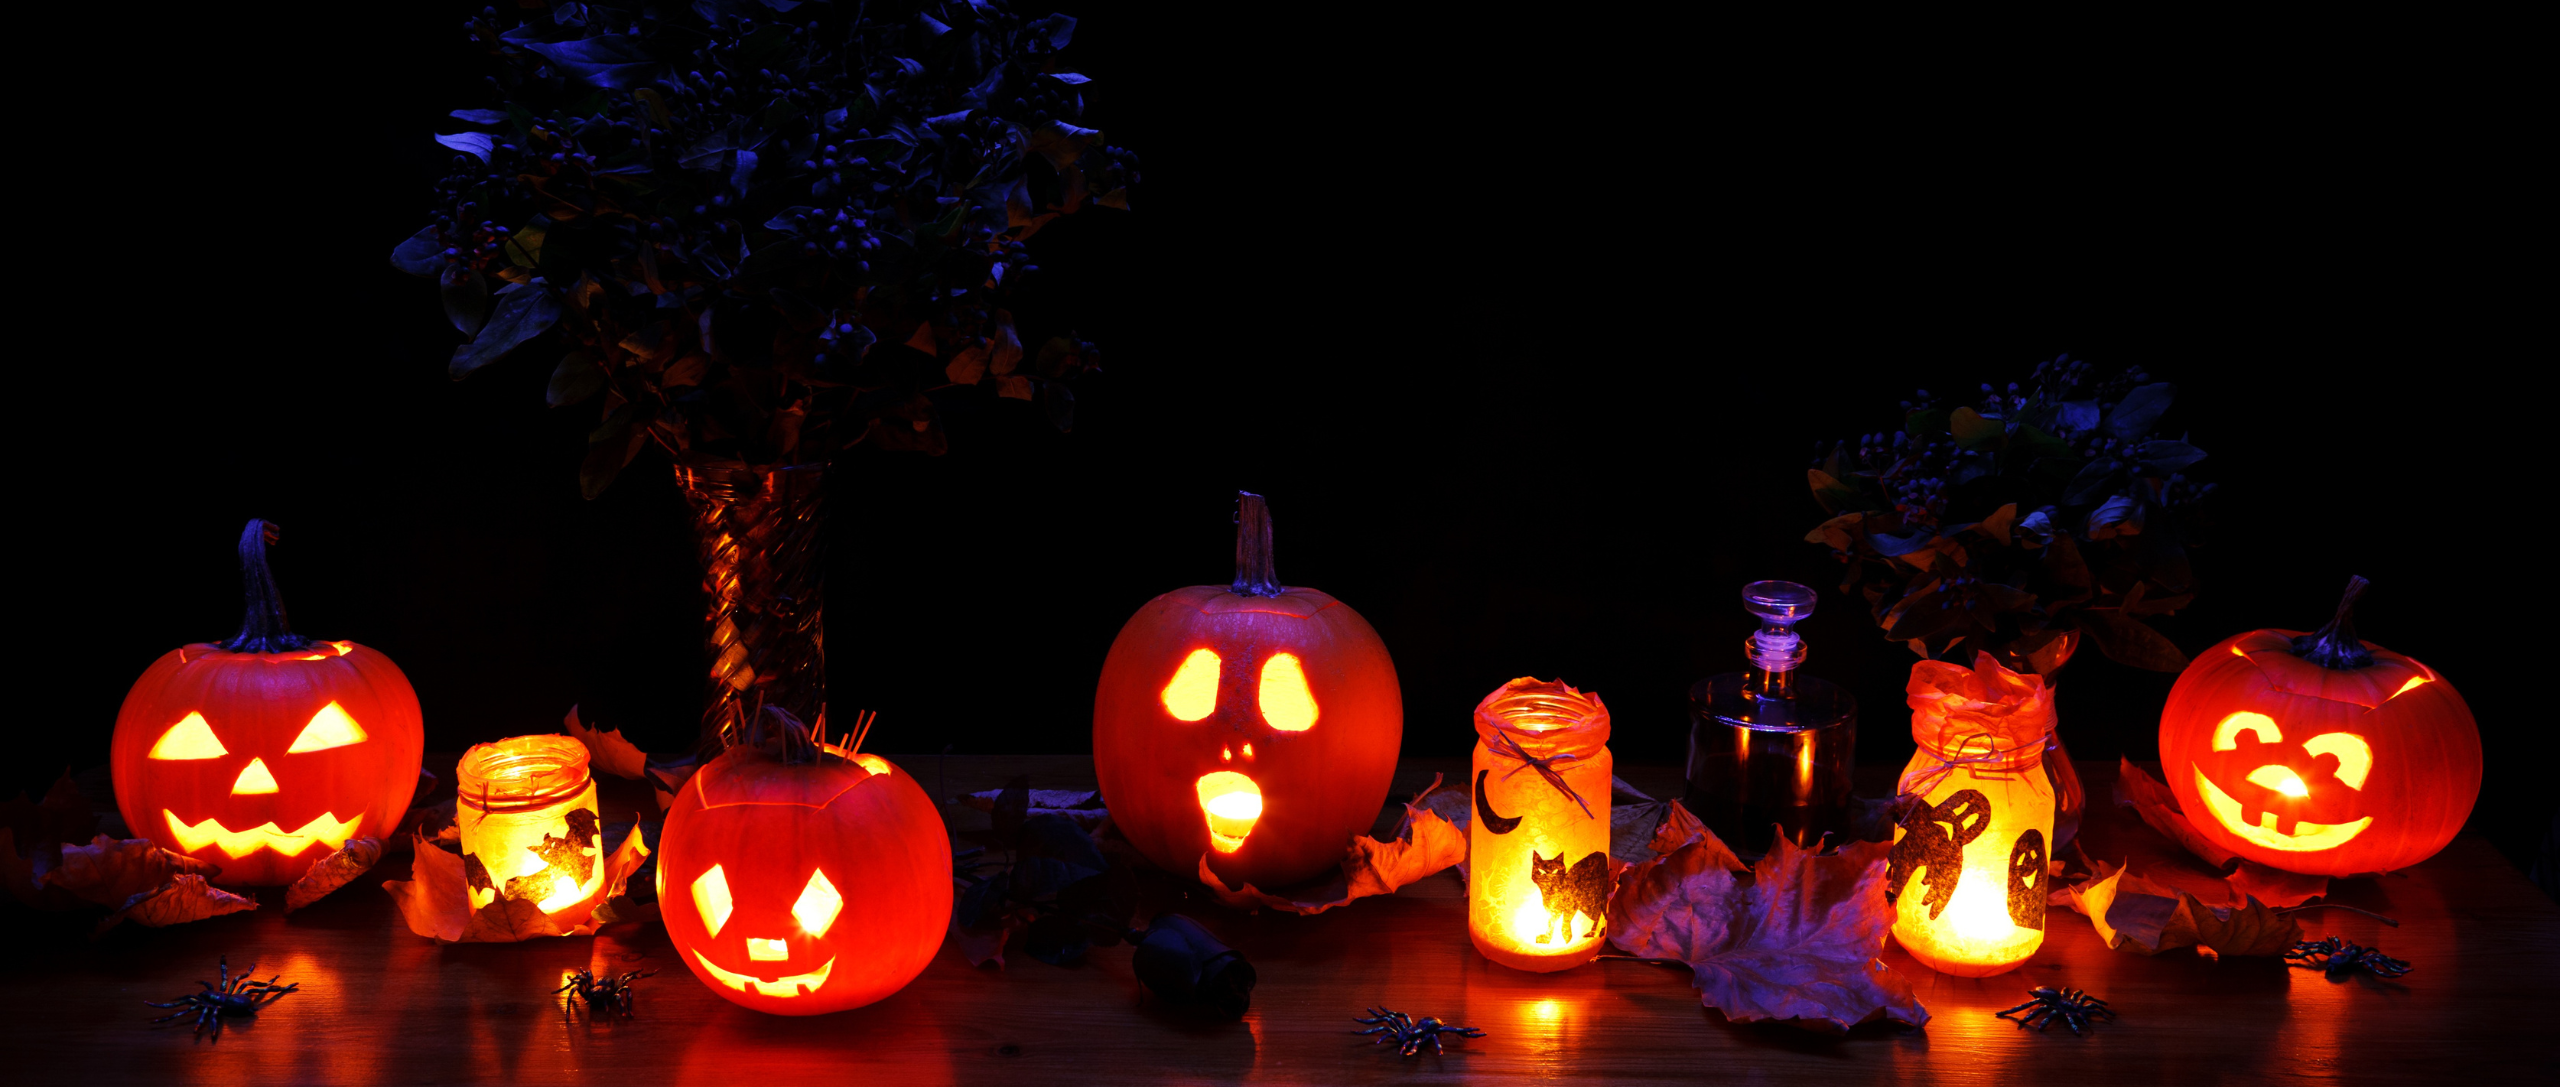 detalle de calabazas vacías y con velas típicas de la fiesta de halloween